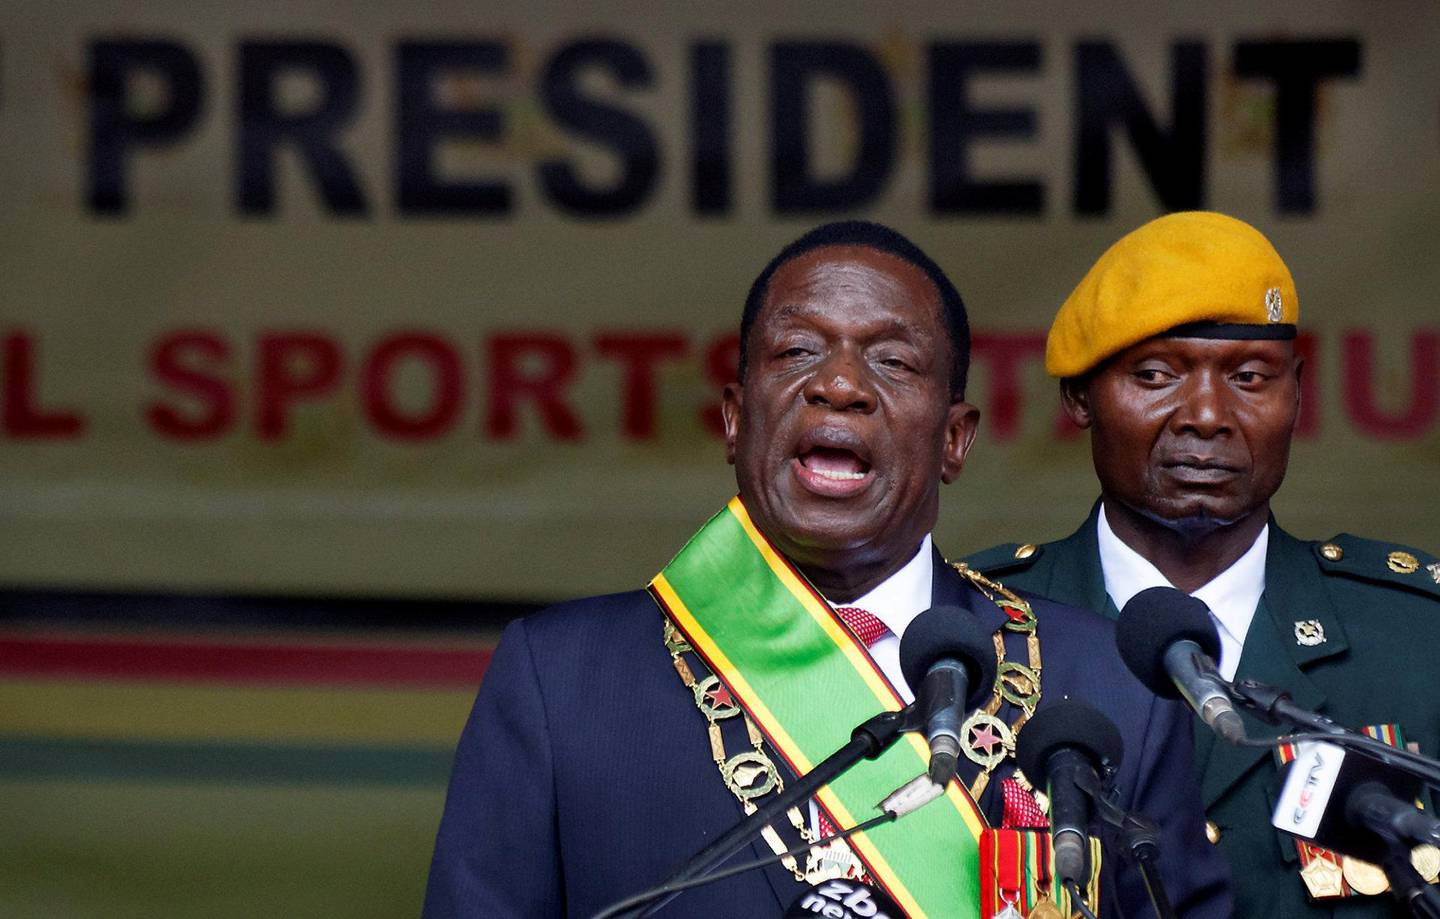 TOK OVER: Emmerson Mnangagwa tok over i 2017, men er fra samme regime som Mugabe. FOTO: NTB SCANPIX